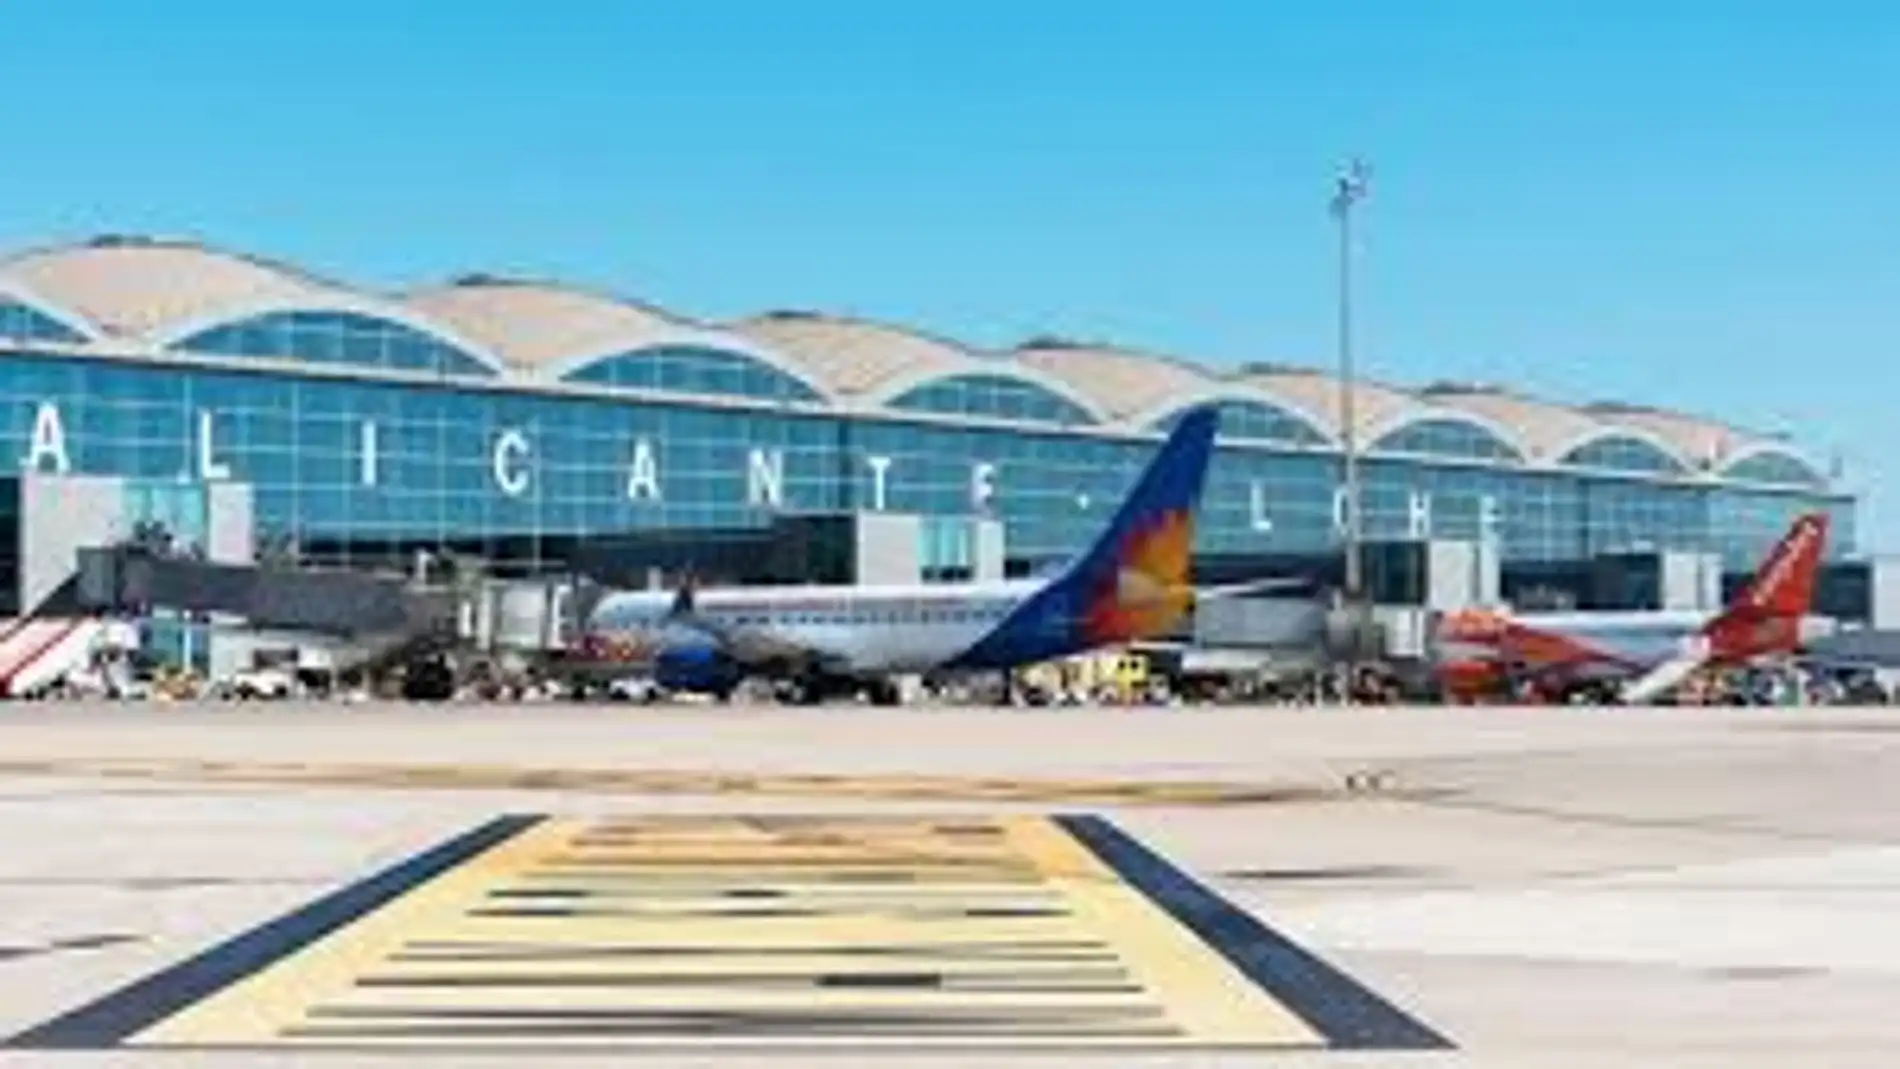 Aeropuerto Alicante - Elche 'Miguel Hernández'